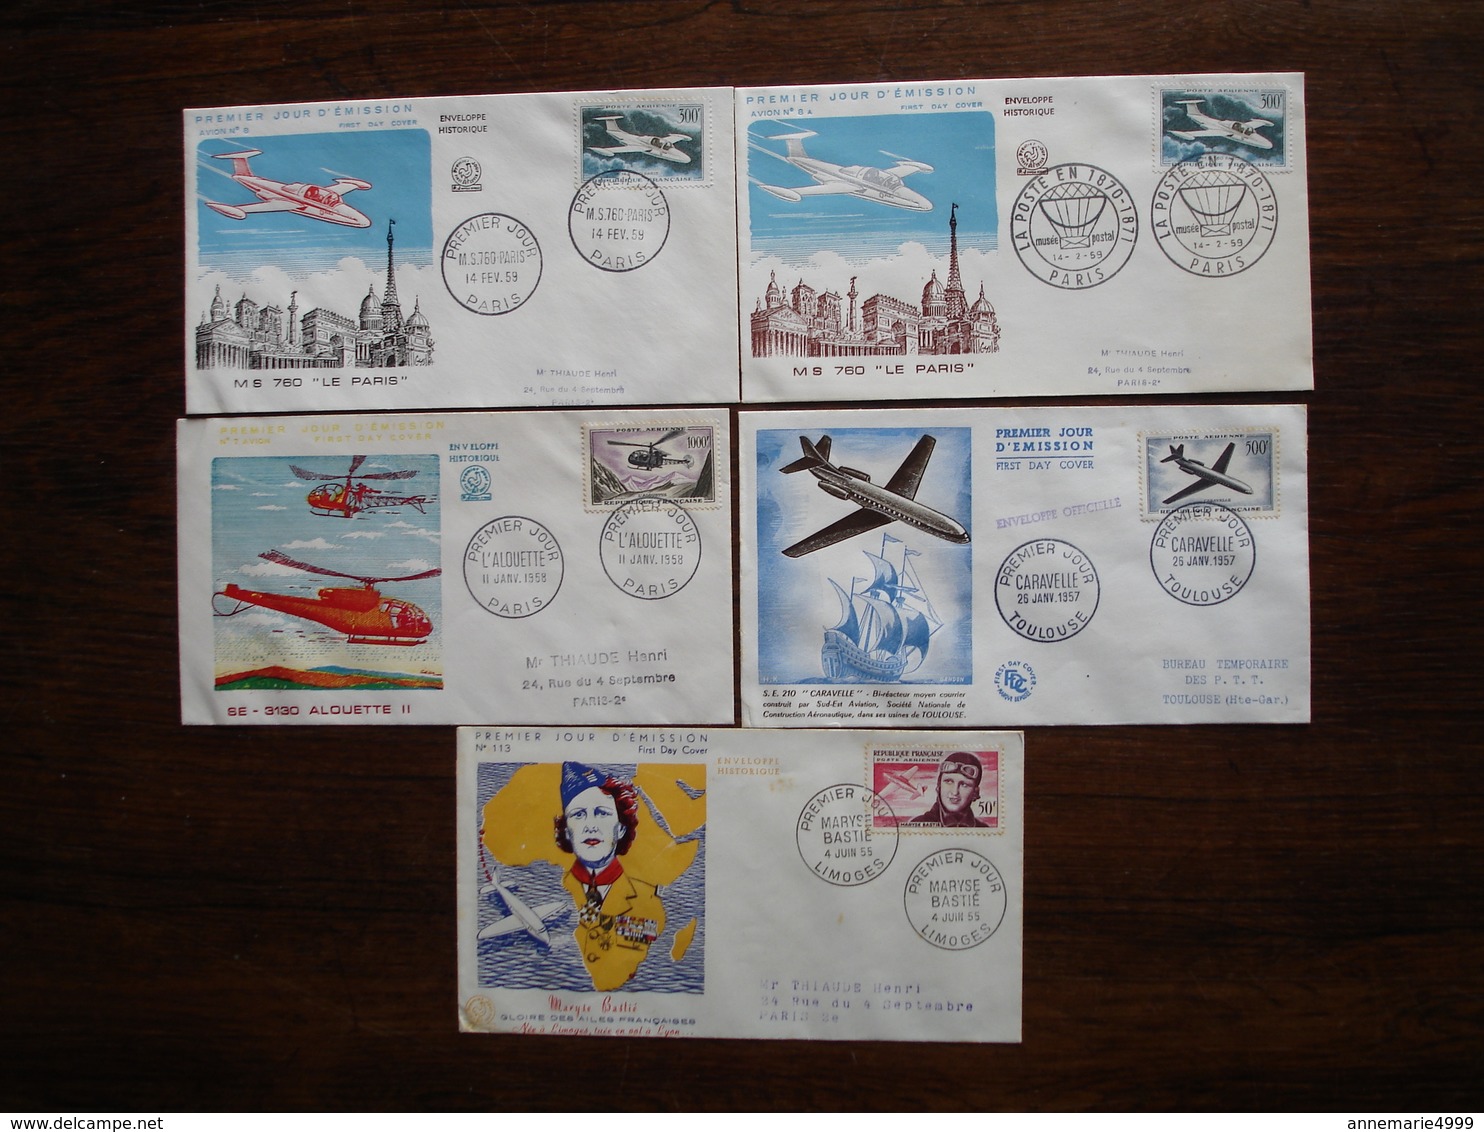 FRANCE Premiers Jours Poste Aérienne Alouette, Caravelle, Bastié Et MS 760 Cote 370 - 1950-1959